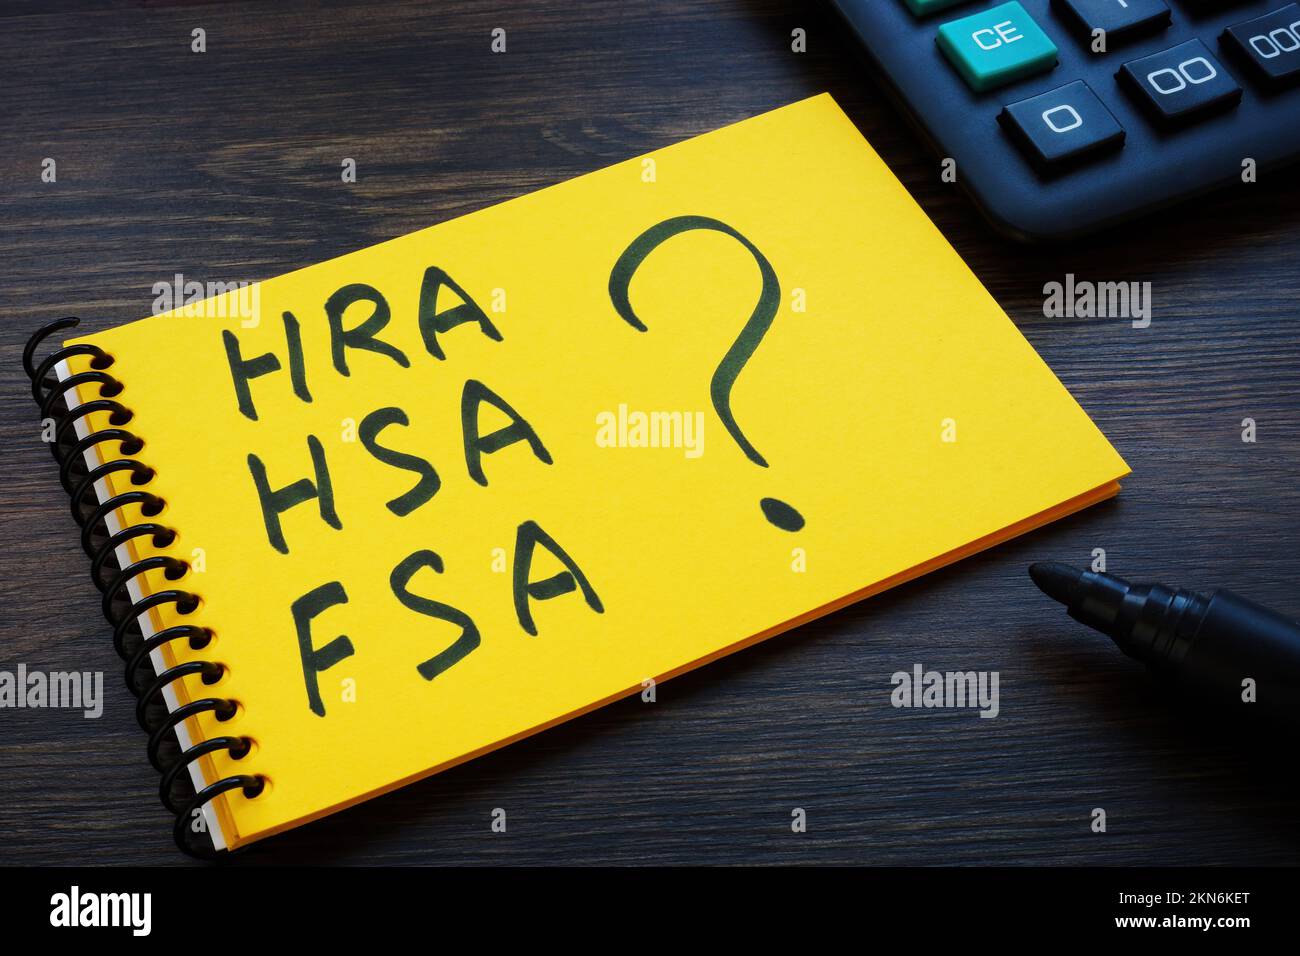 Blocco note con note HRA, HSA, FSA e punto interrogativo. Foto Stock